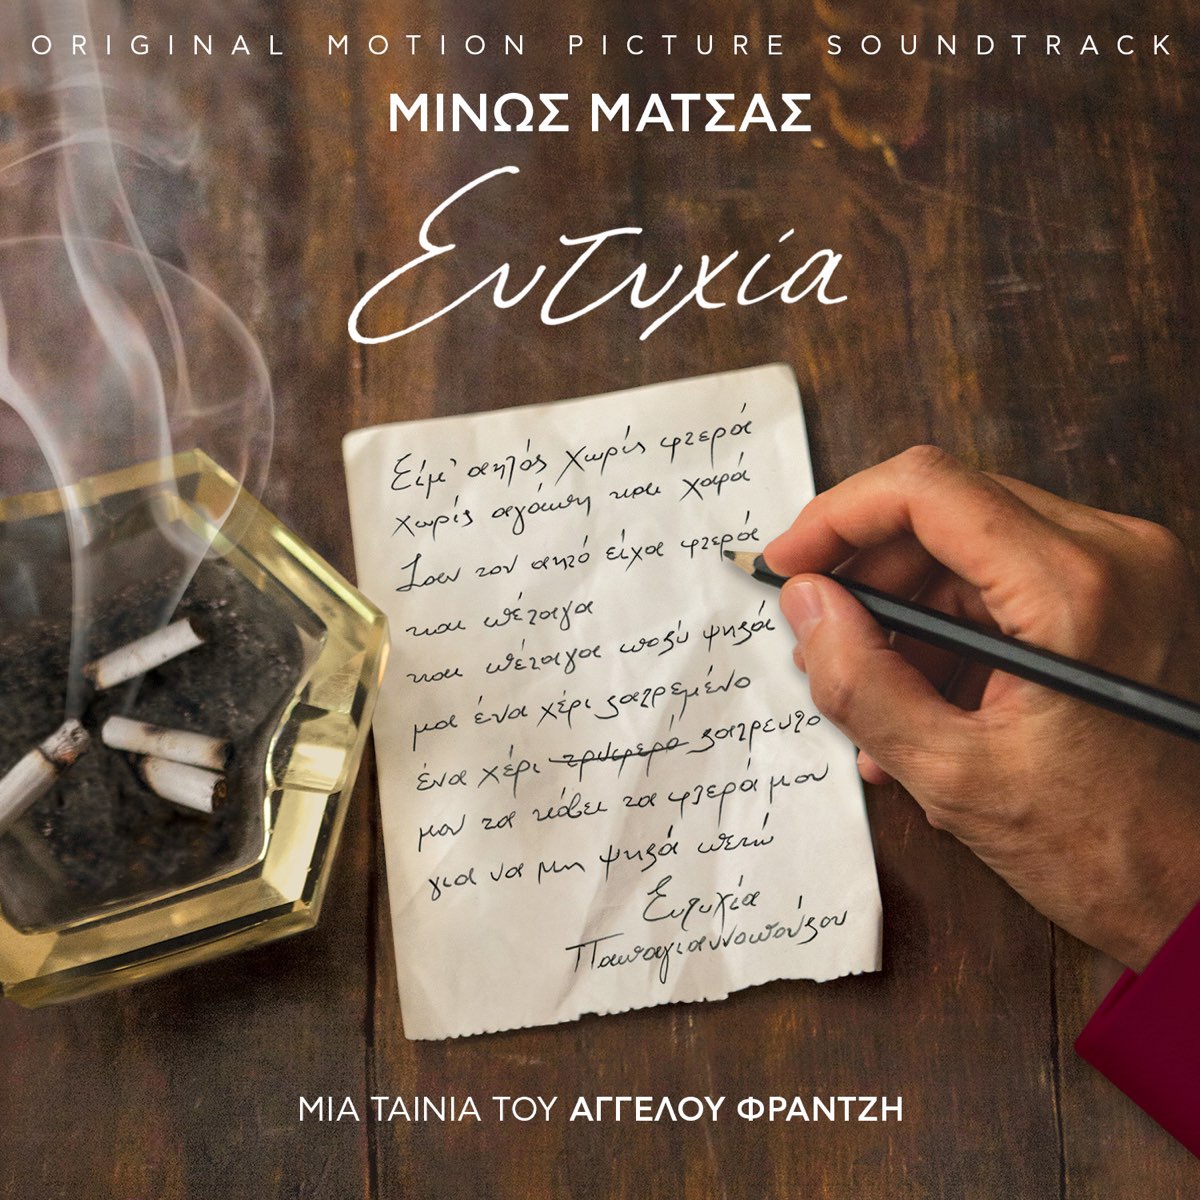 Eftihia - Album by Minos Matsas - Apple Music